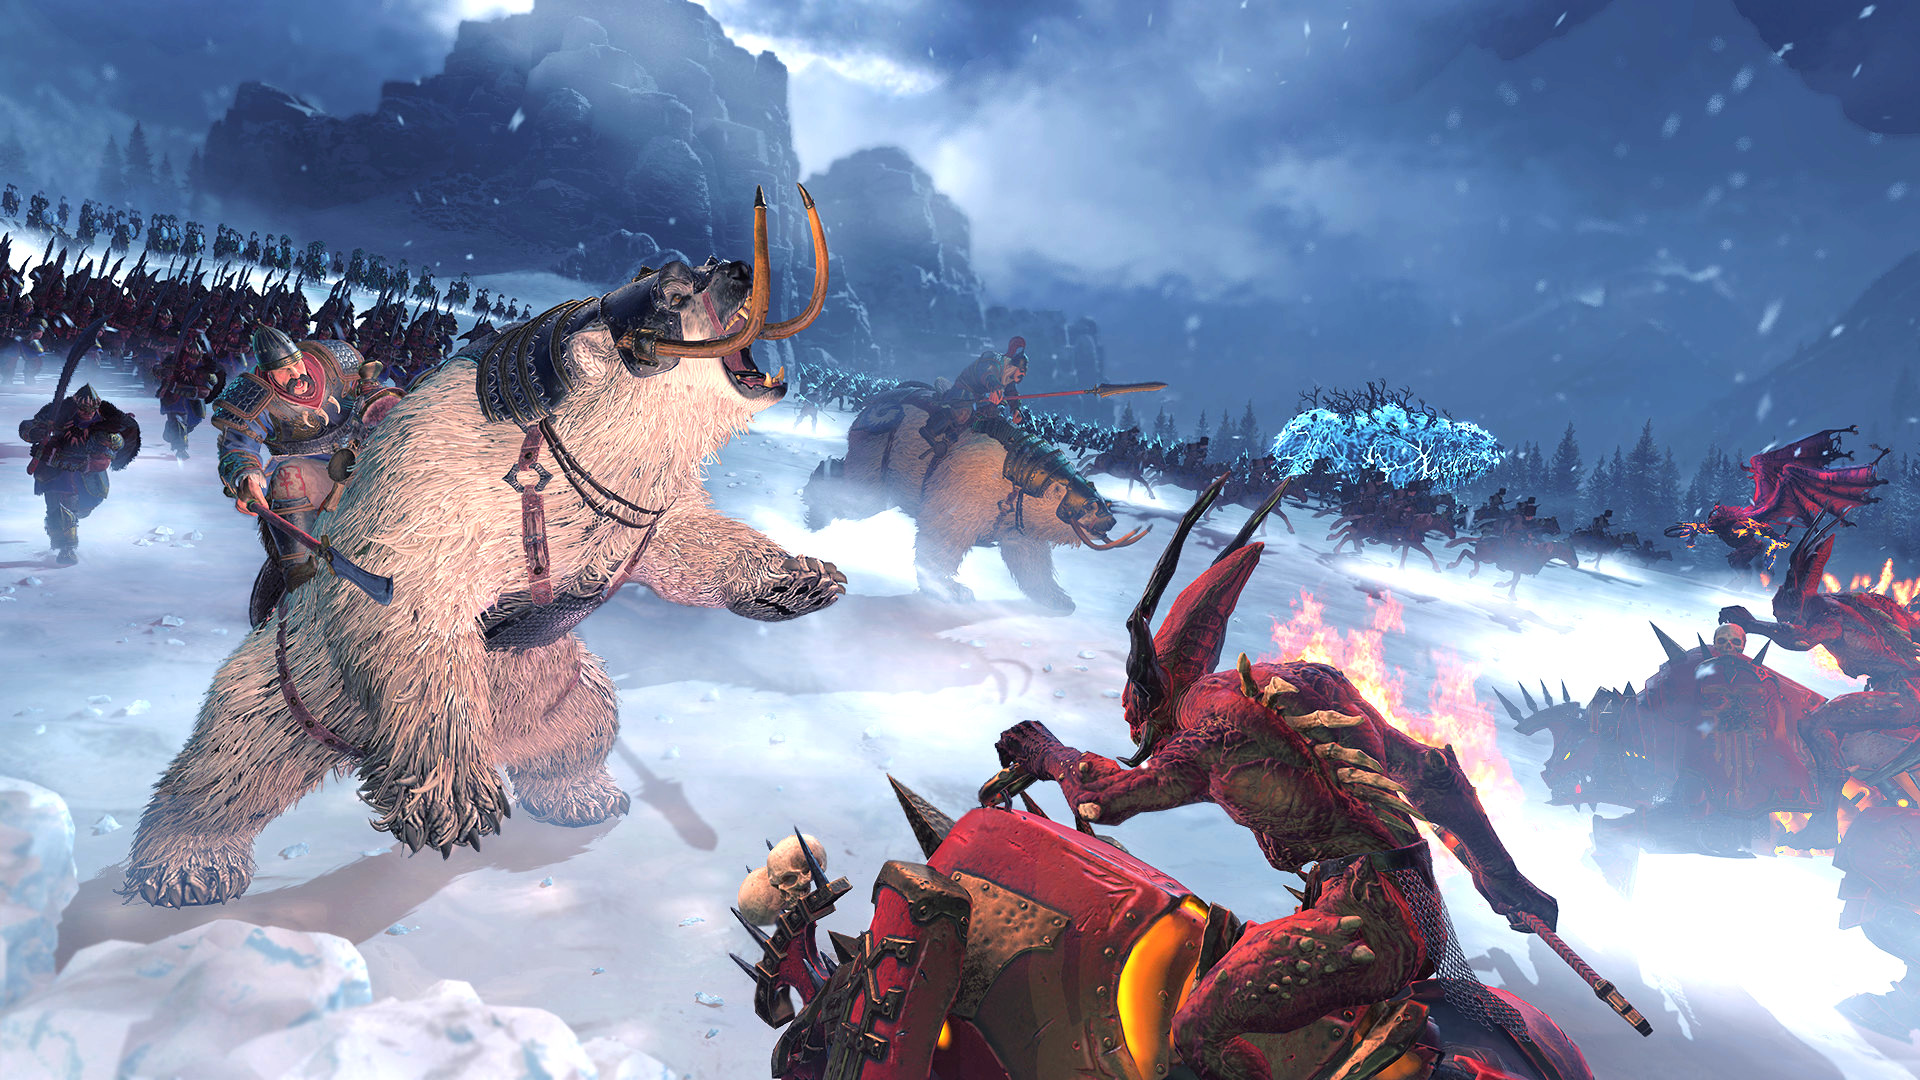 Total War: Warhammer 3's Kislev ya sami cikakken jerin sunayen sojoji